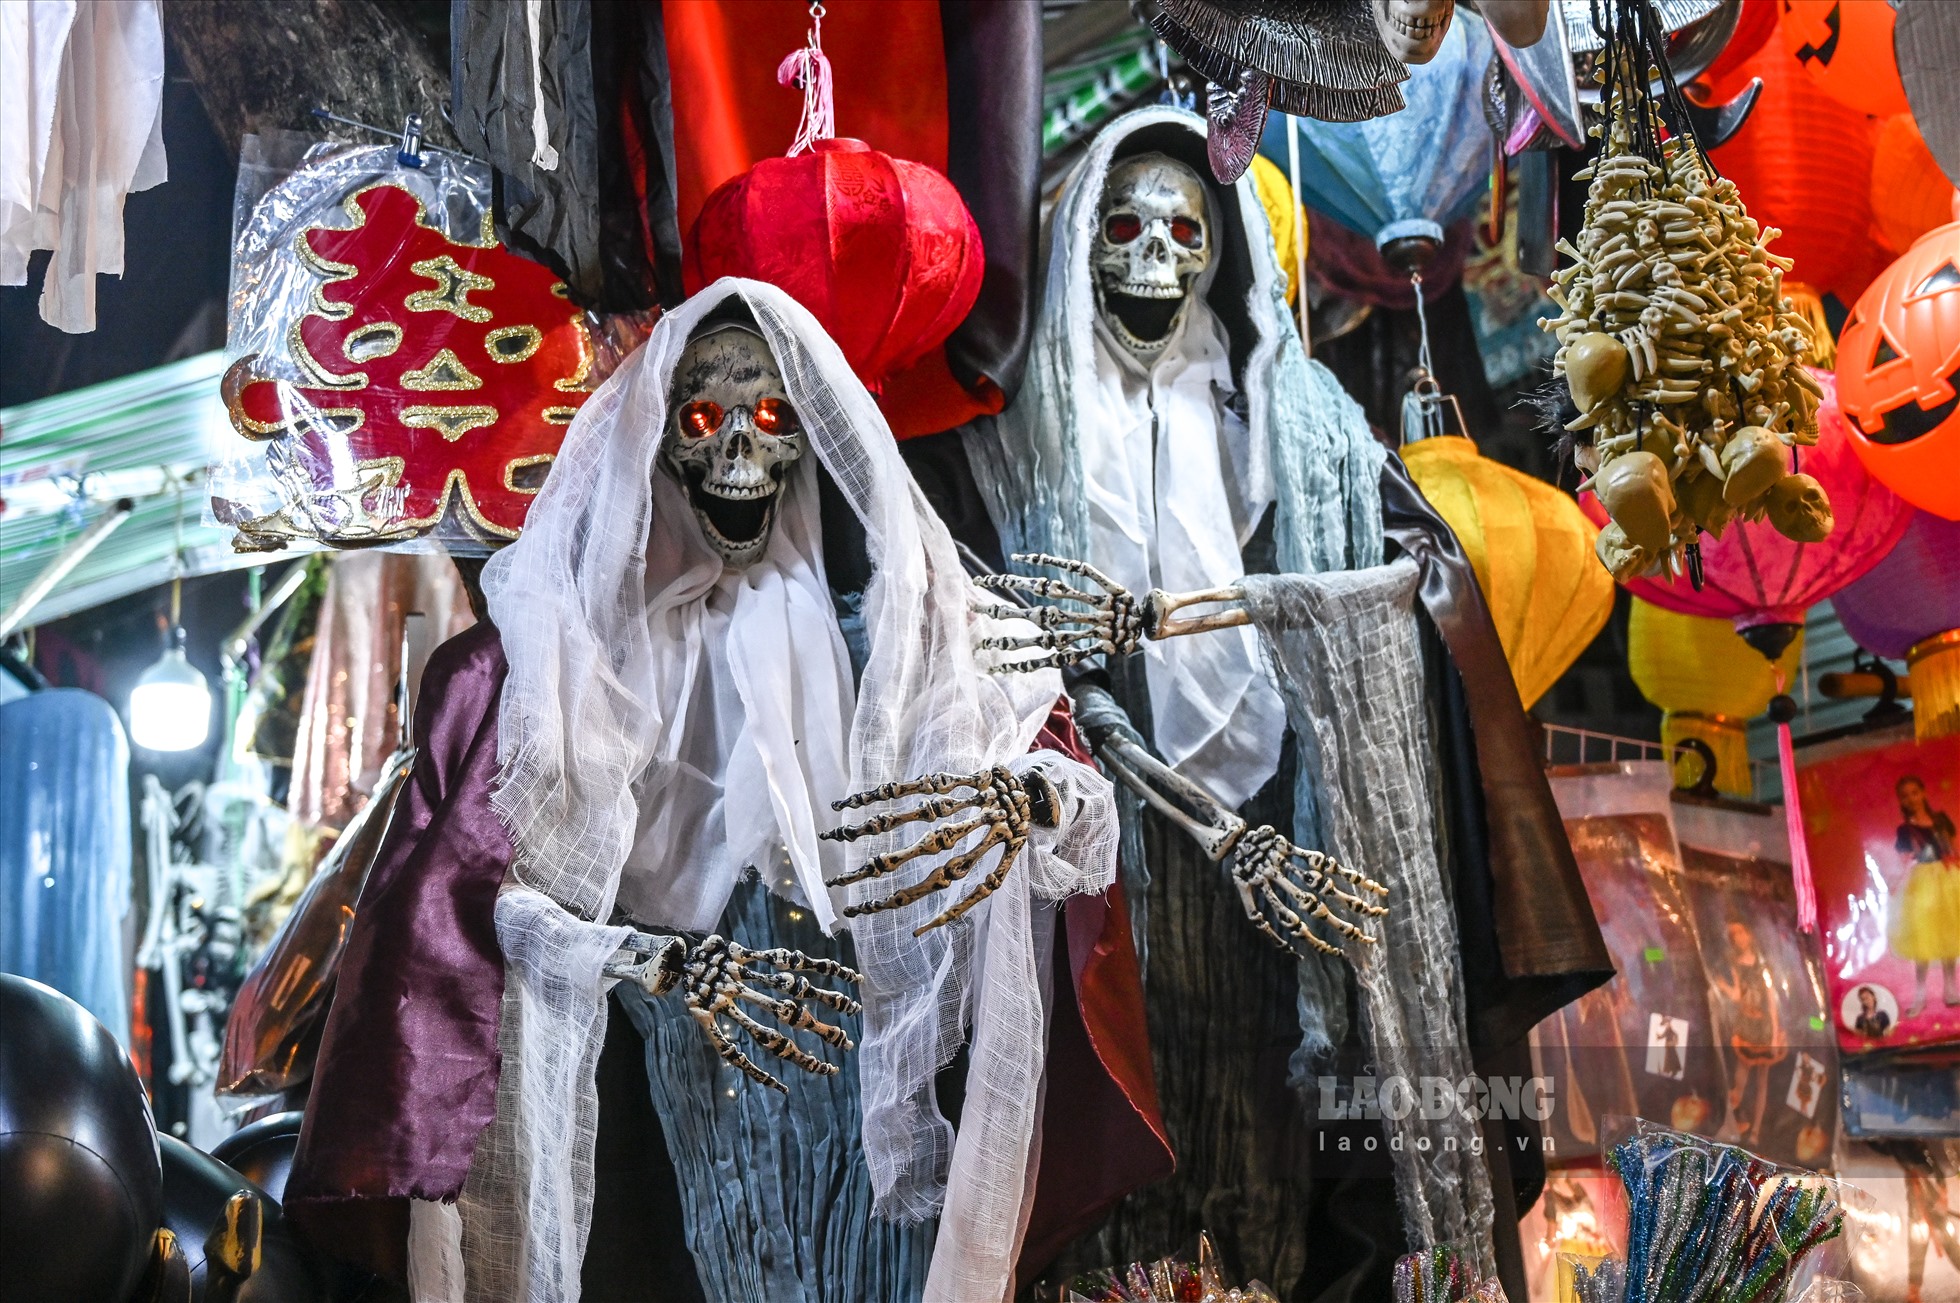 Ngày hội hóa trang Halloween diễn ra vào ngày 31.10 hàng năm, được du nhập vào Việt Nam trong những năm gần đây và được giới trẻ đón nhận.